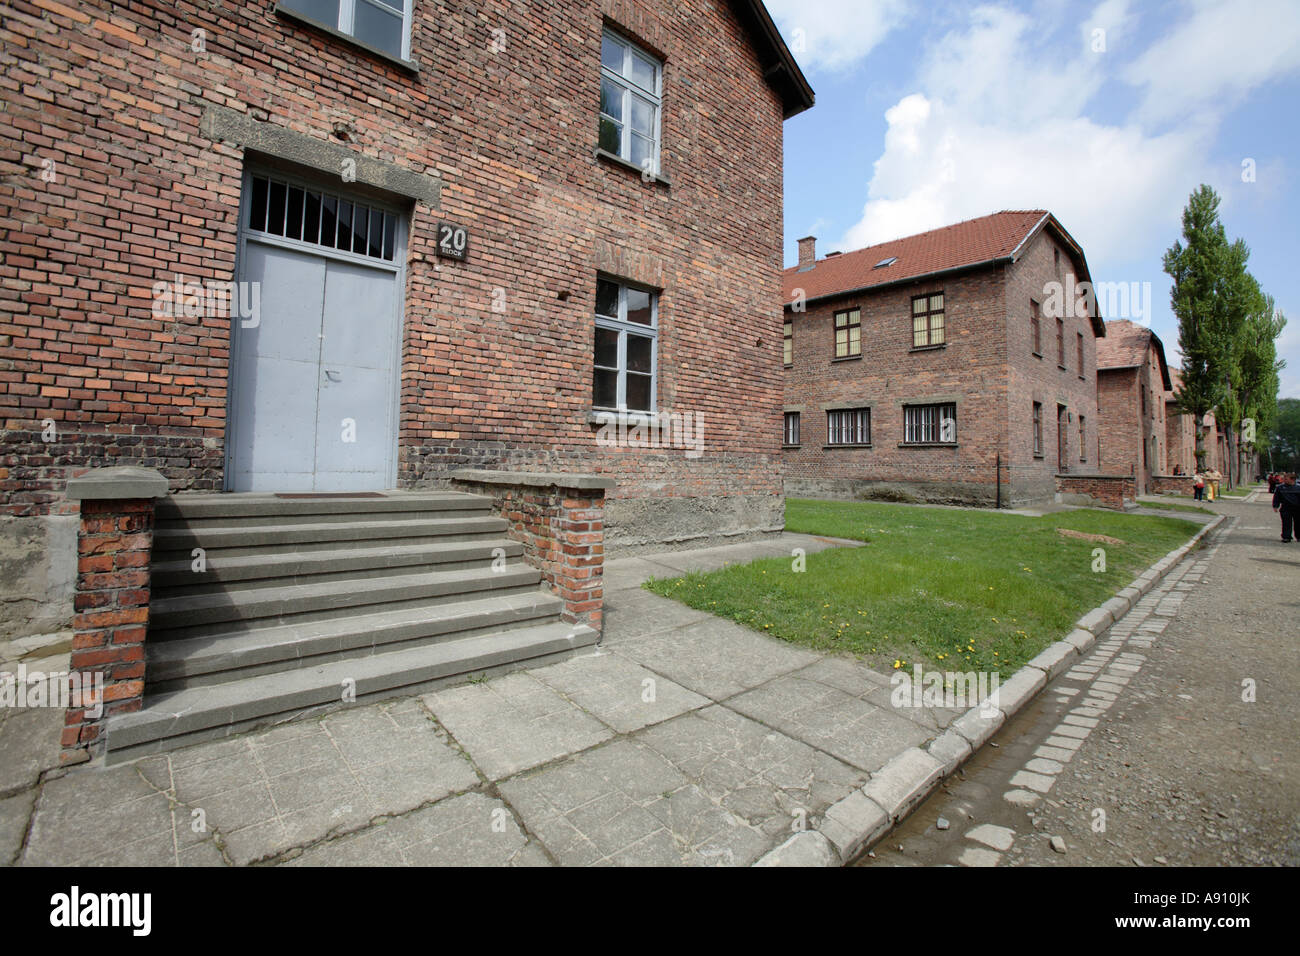 Caserne en camp de concentration nazi, Auschwitz, Pologne Banque D'Images